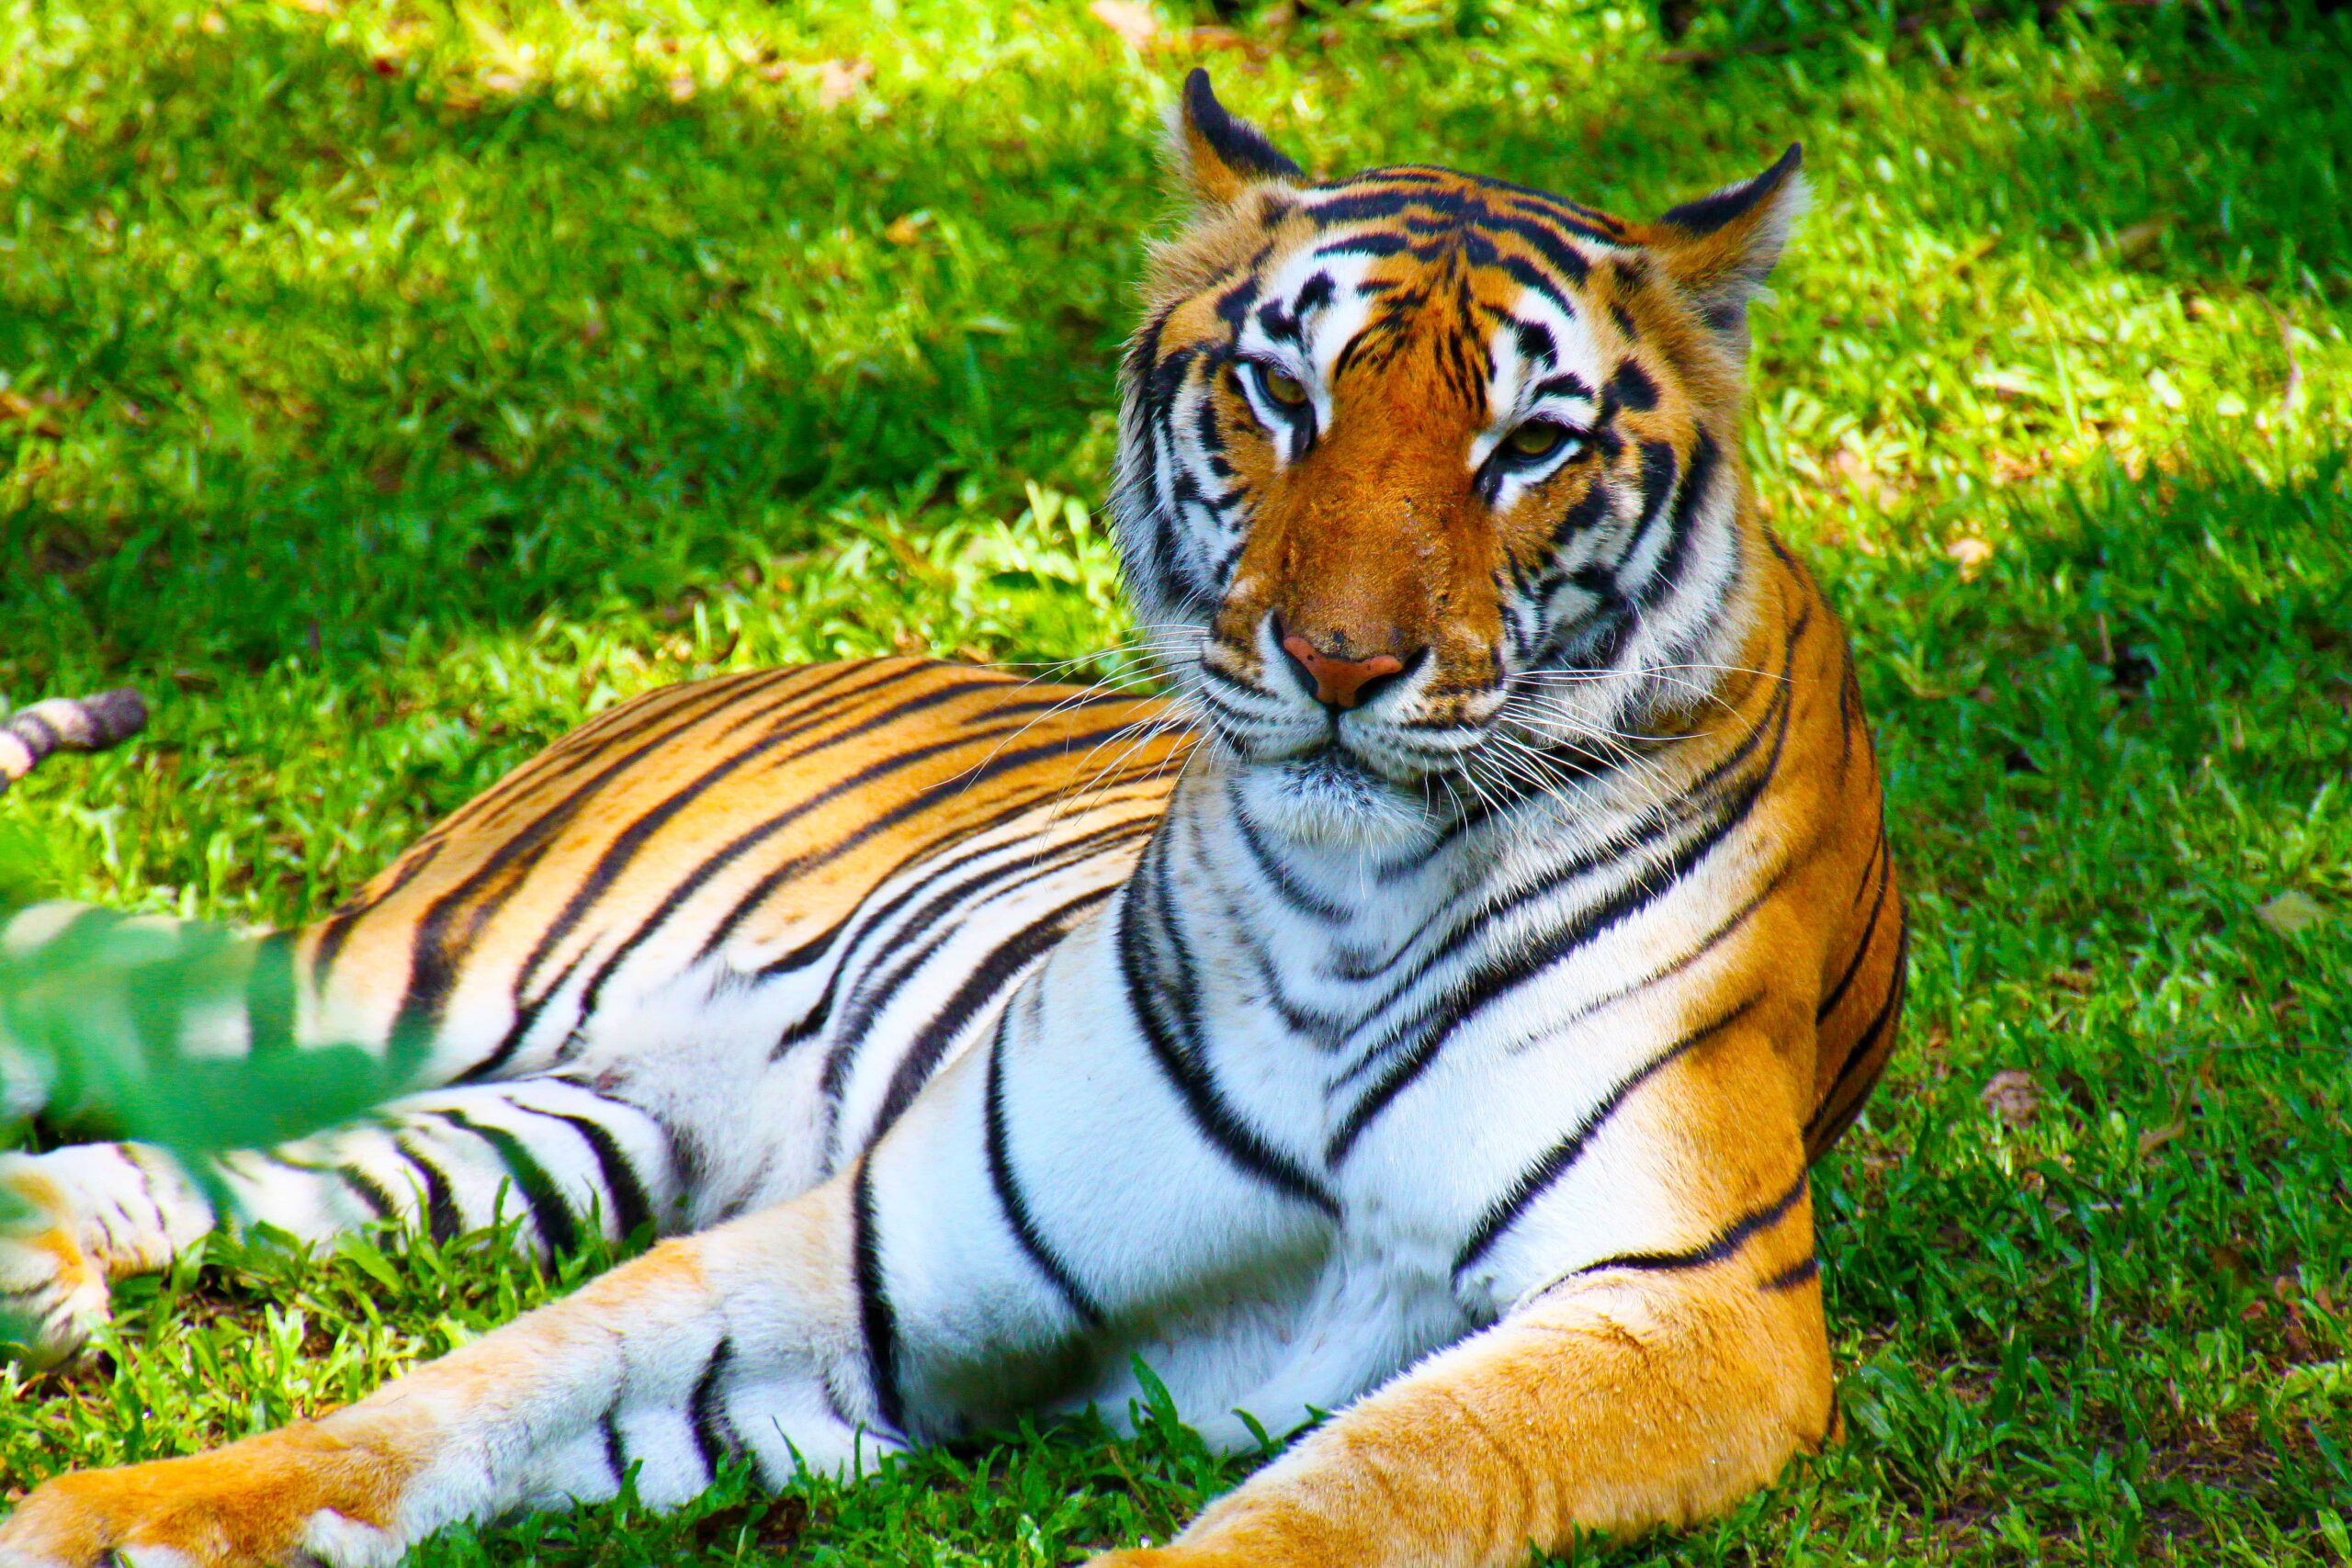 Female tiger resting in safari park